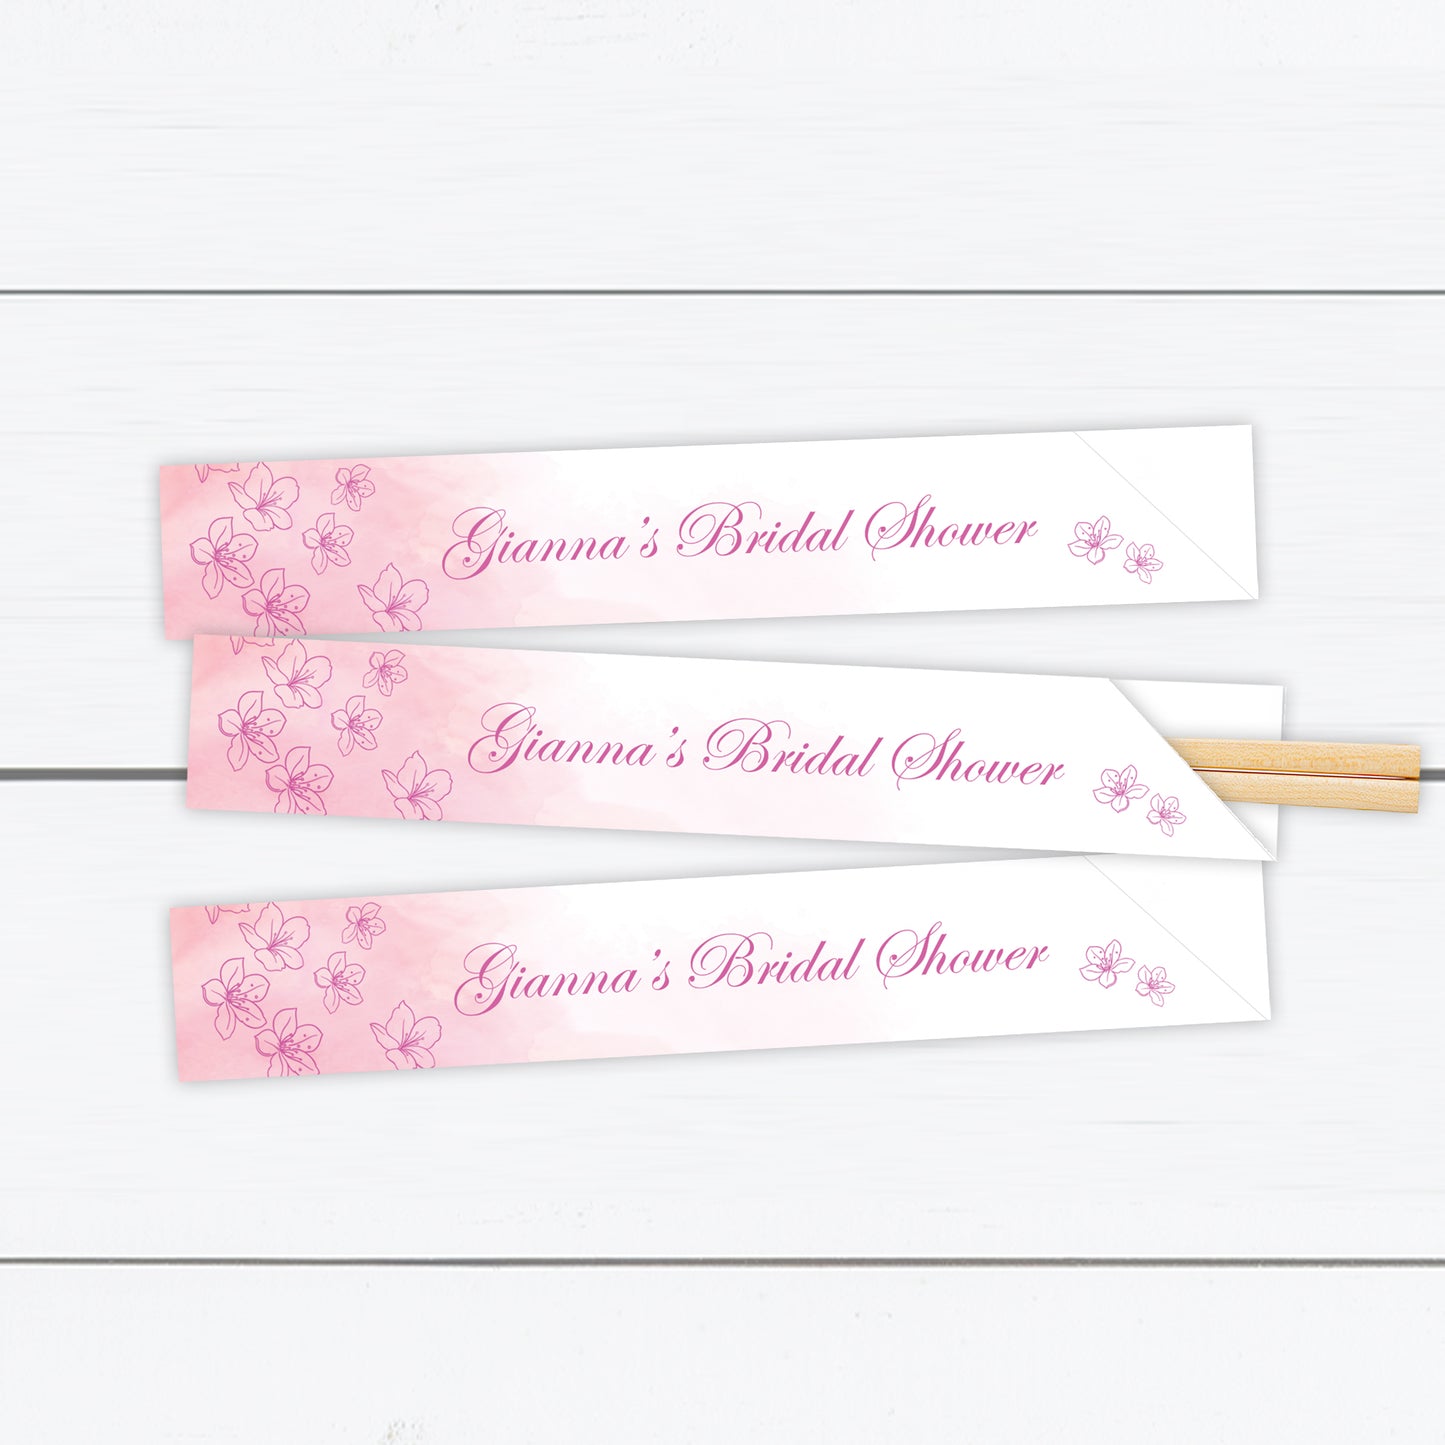 Custom Designed Cherry Blossom Chopstick Sleeves